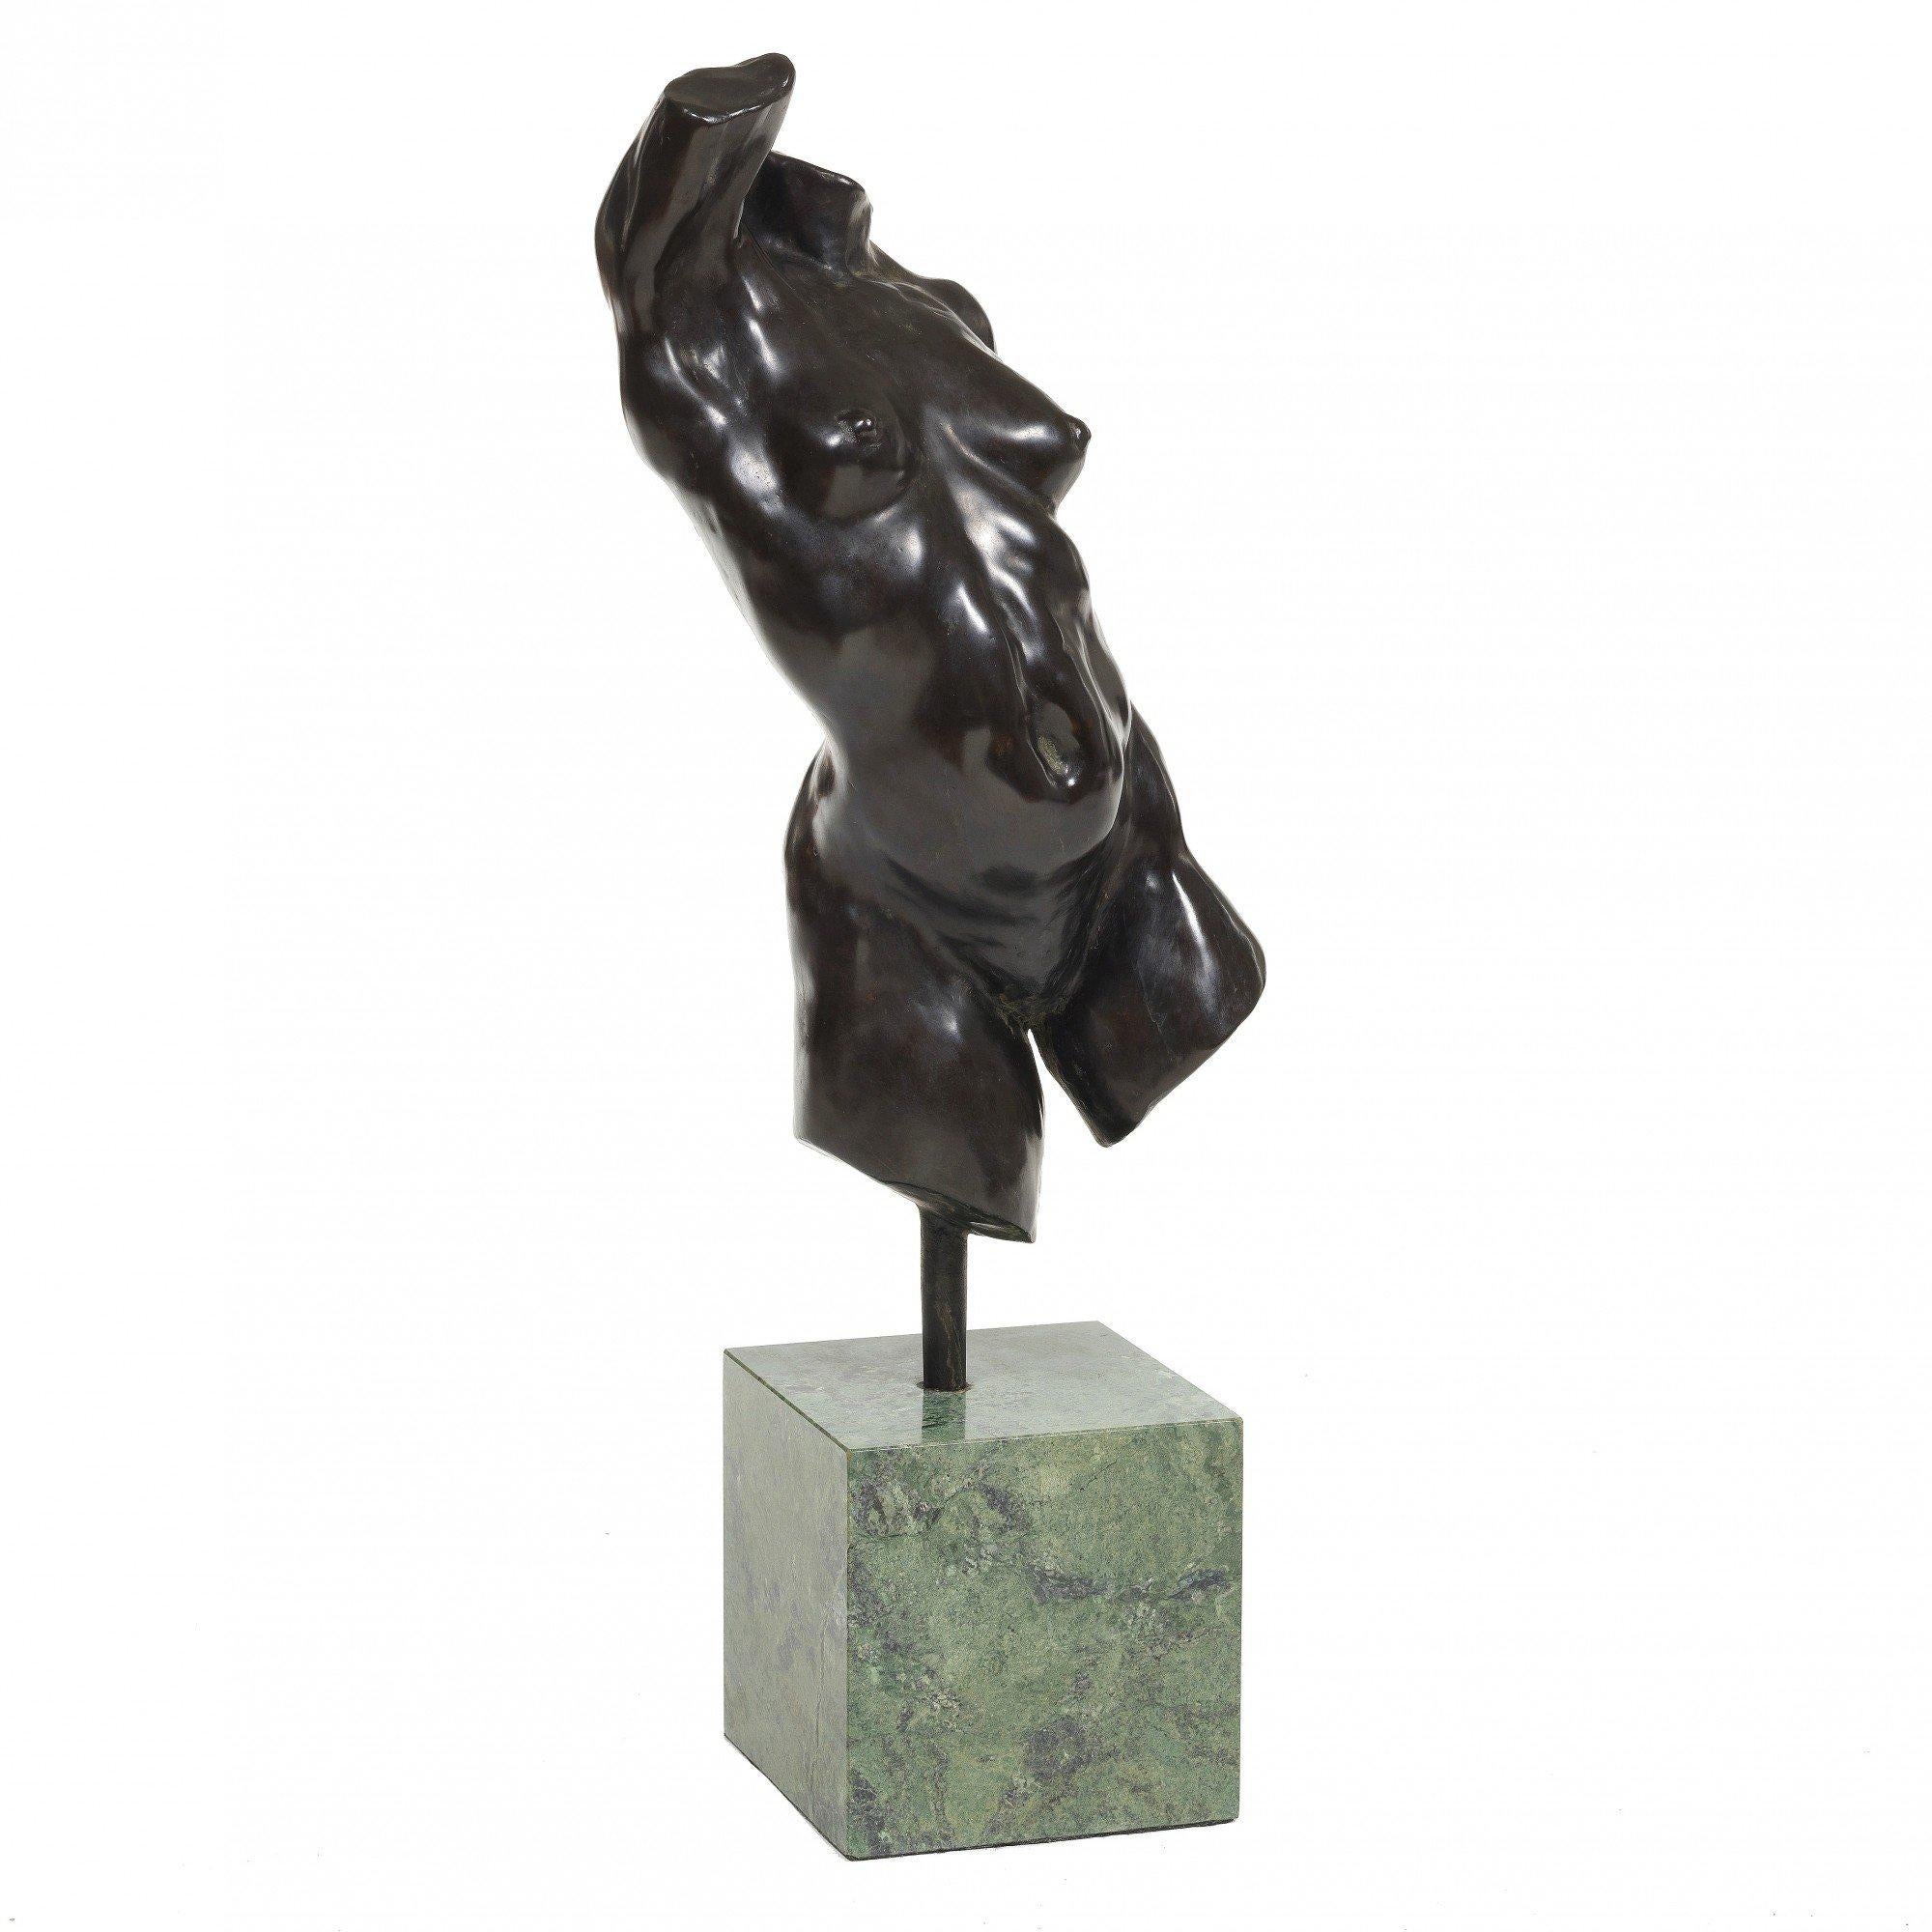 Nackter weiblicher Torso Bronzeskulptur, 20. Jahrhundert Zeitgenössischer amerikanischer Künstler